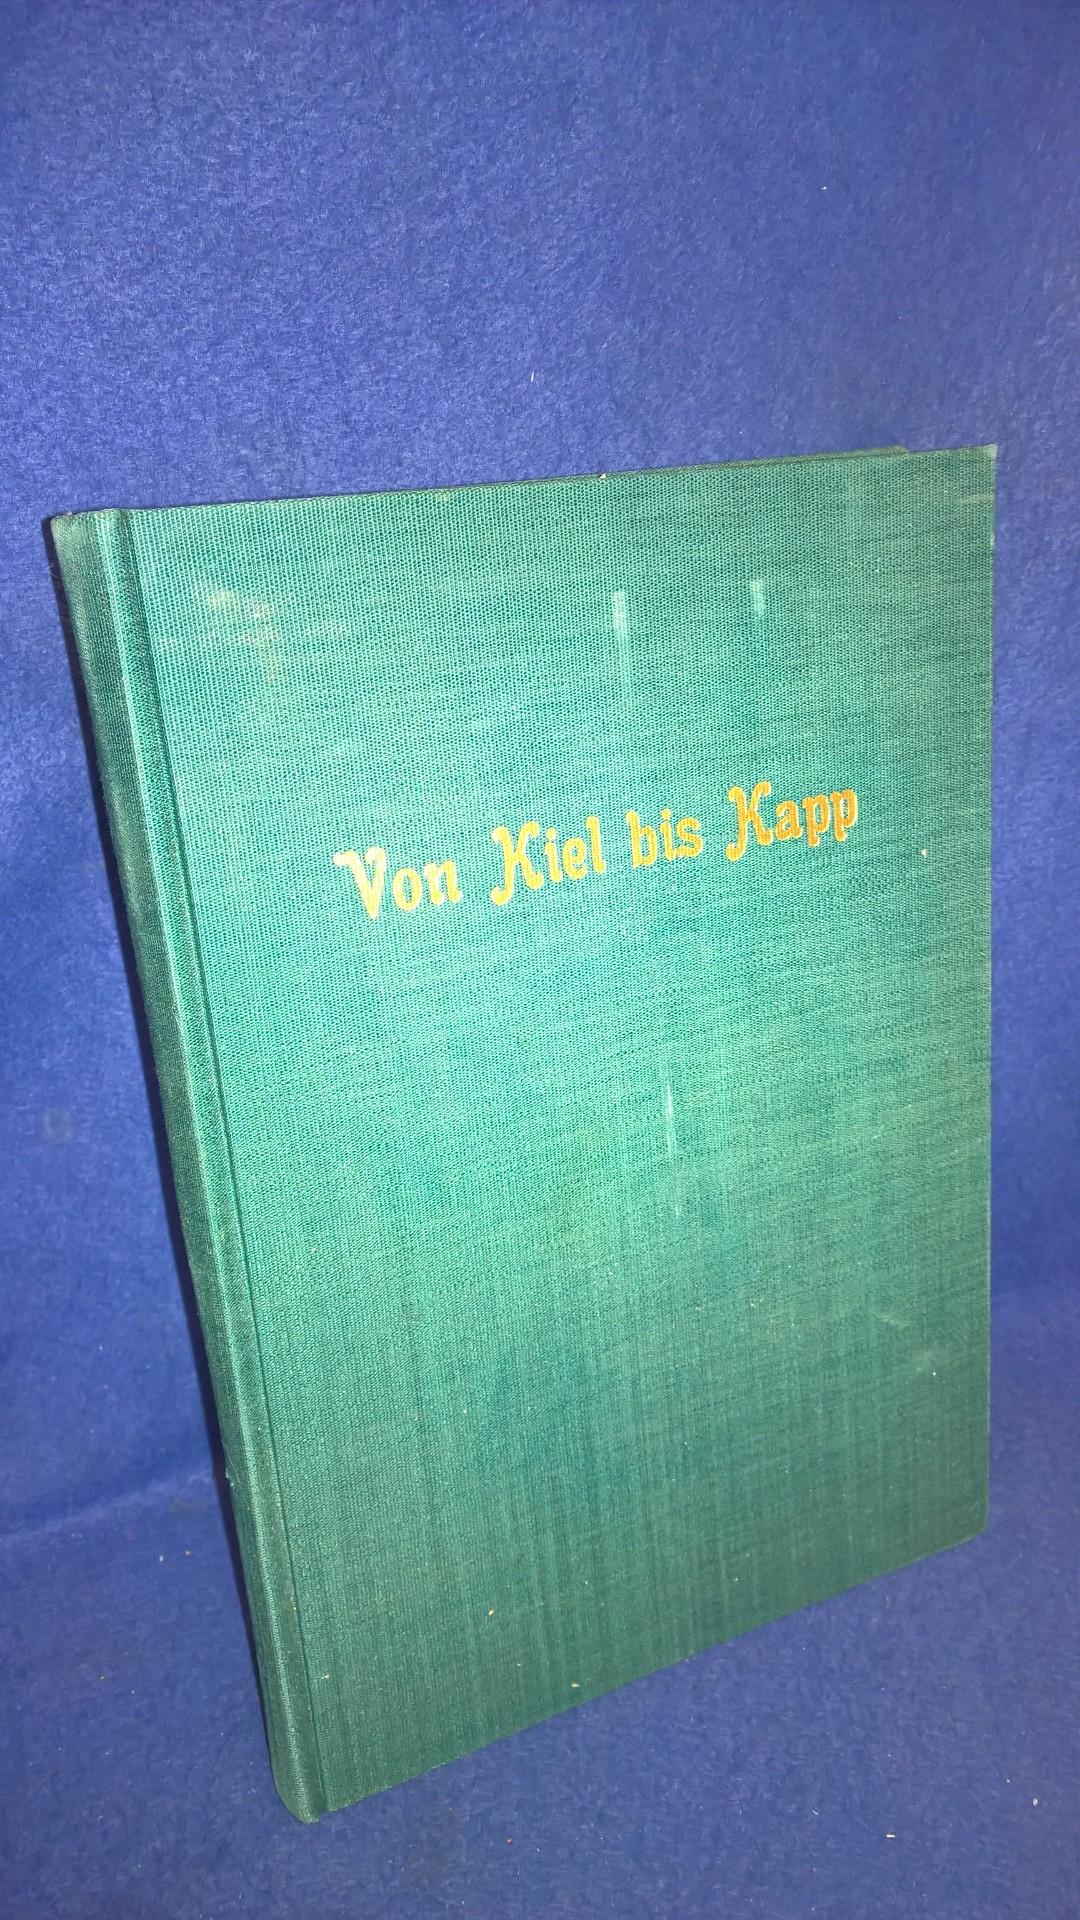 Von Kiel bis Kapp. Zur Geschichte der deutschen Revolution.